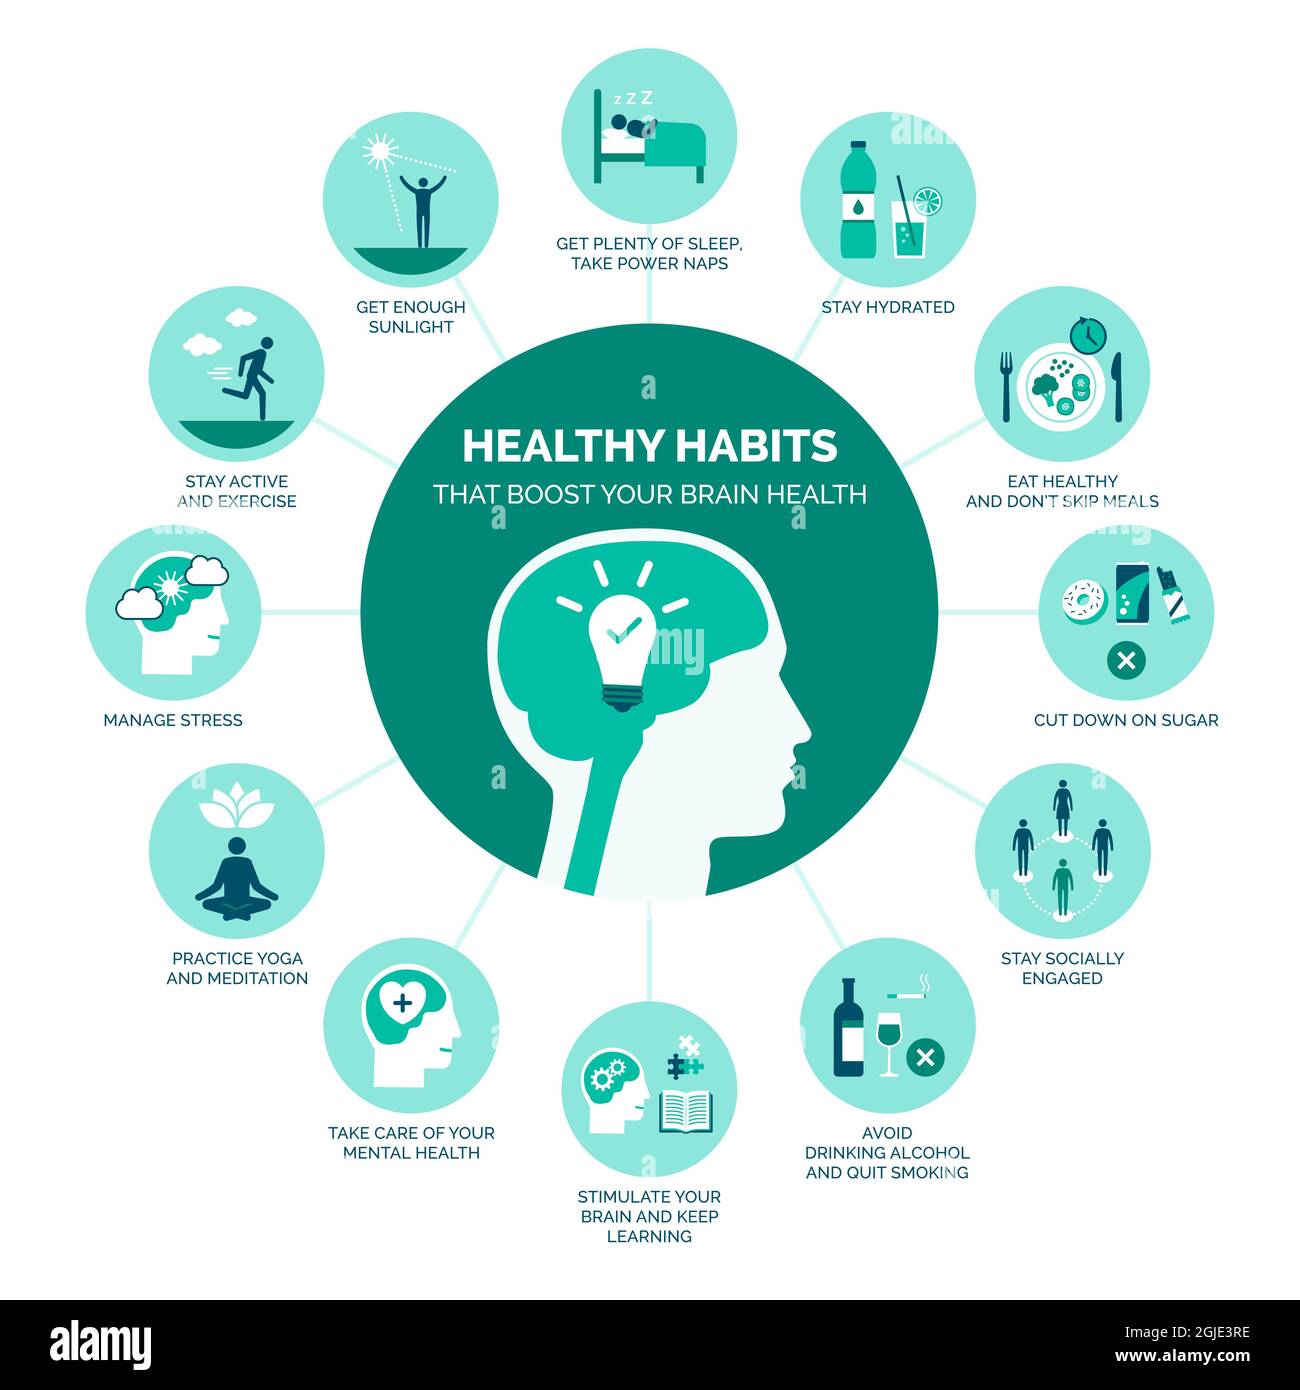 Des habitudes saines qui stimulent la santé de votre cerveau : infographie sur un mode de vie sain et la prévention Illustration de Vecteur